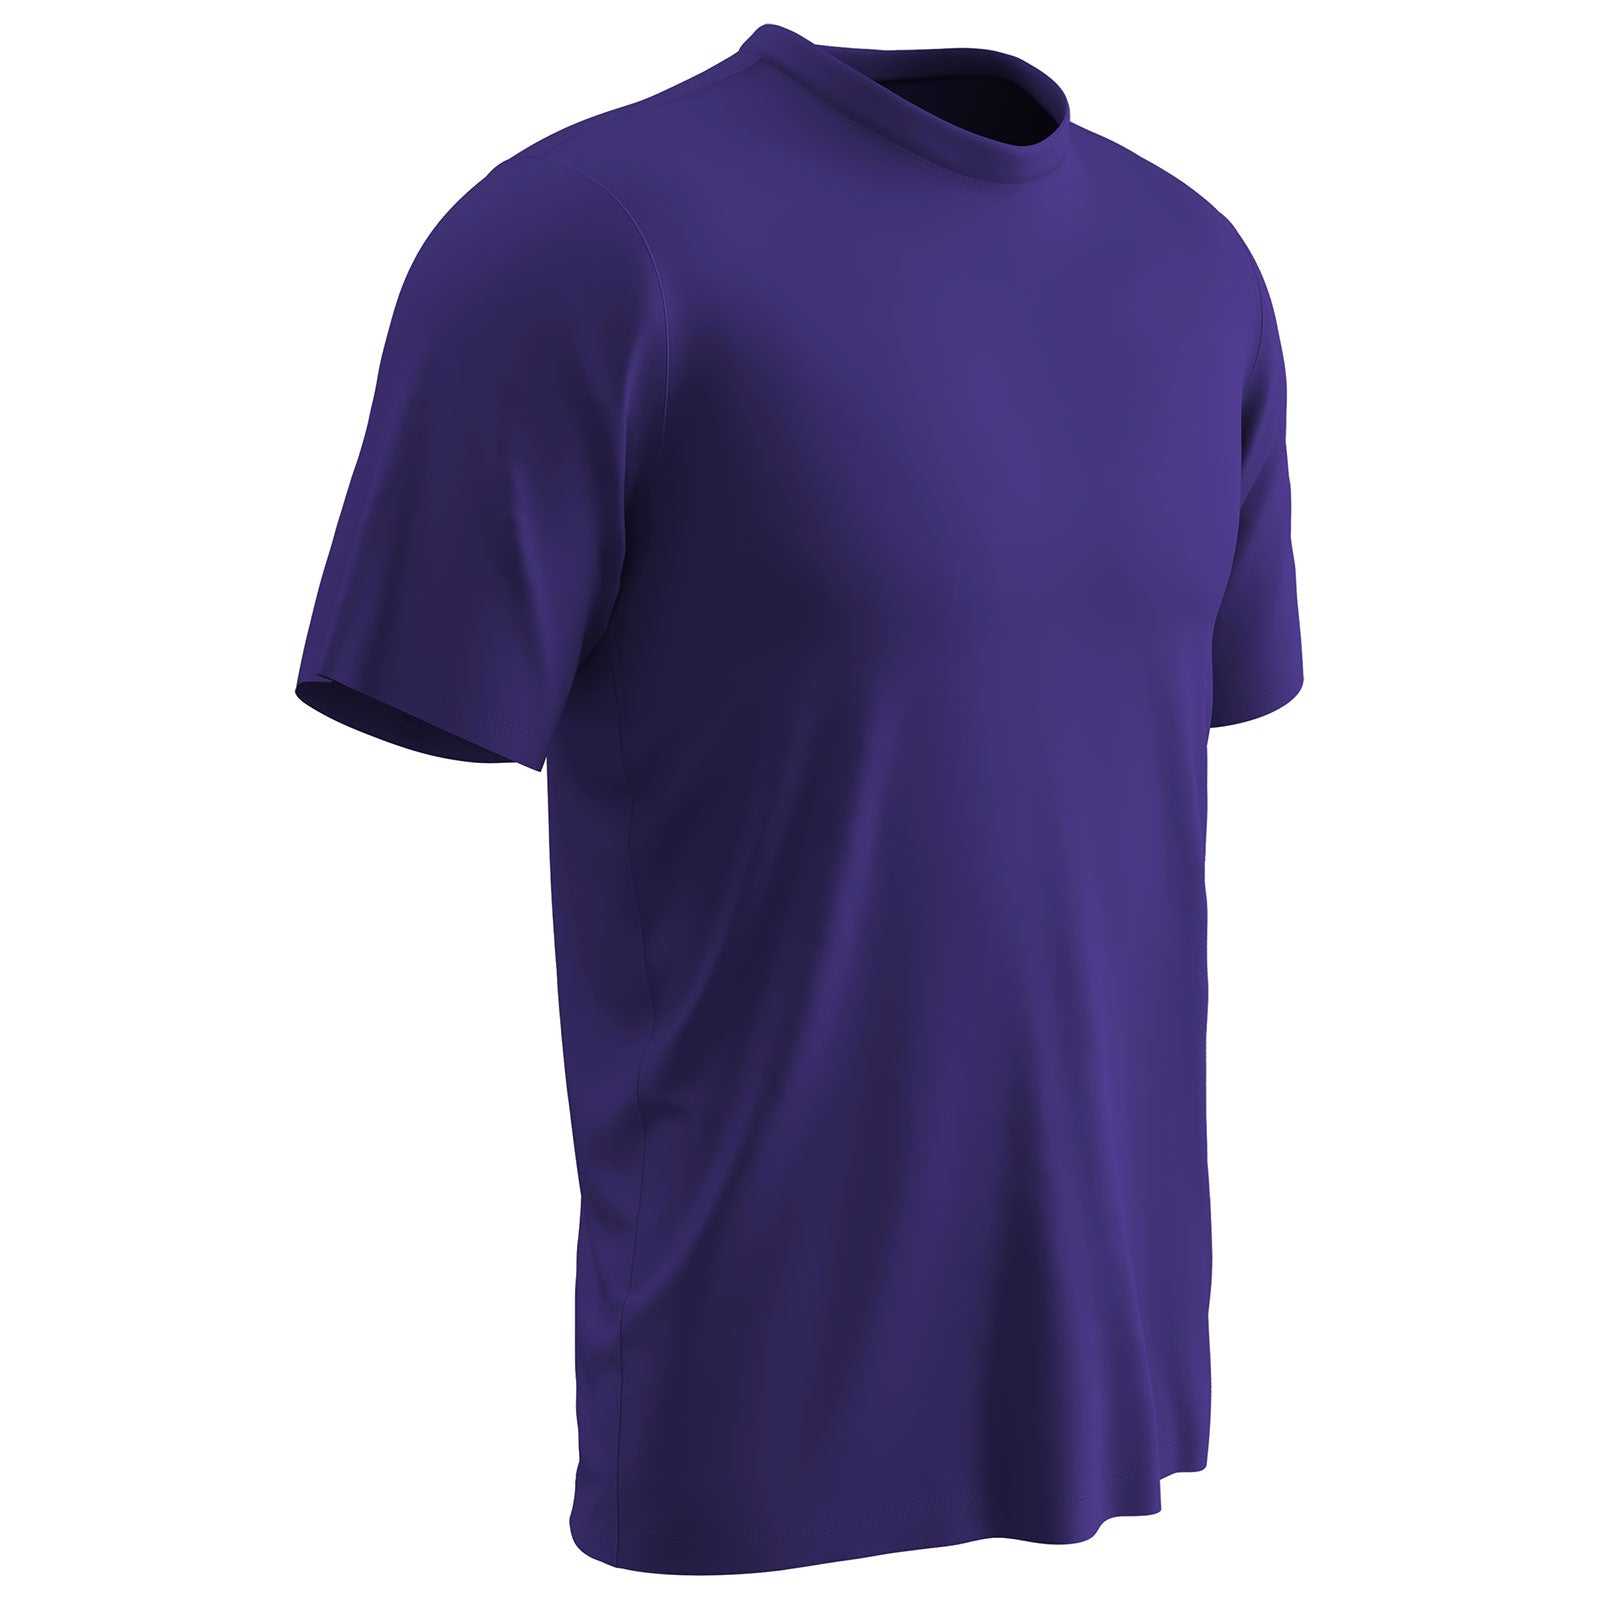 Champro BST99 Vision T-Shirt - Purple - HIT a Double